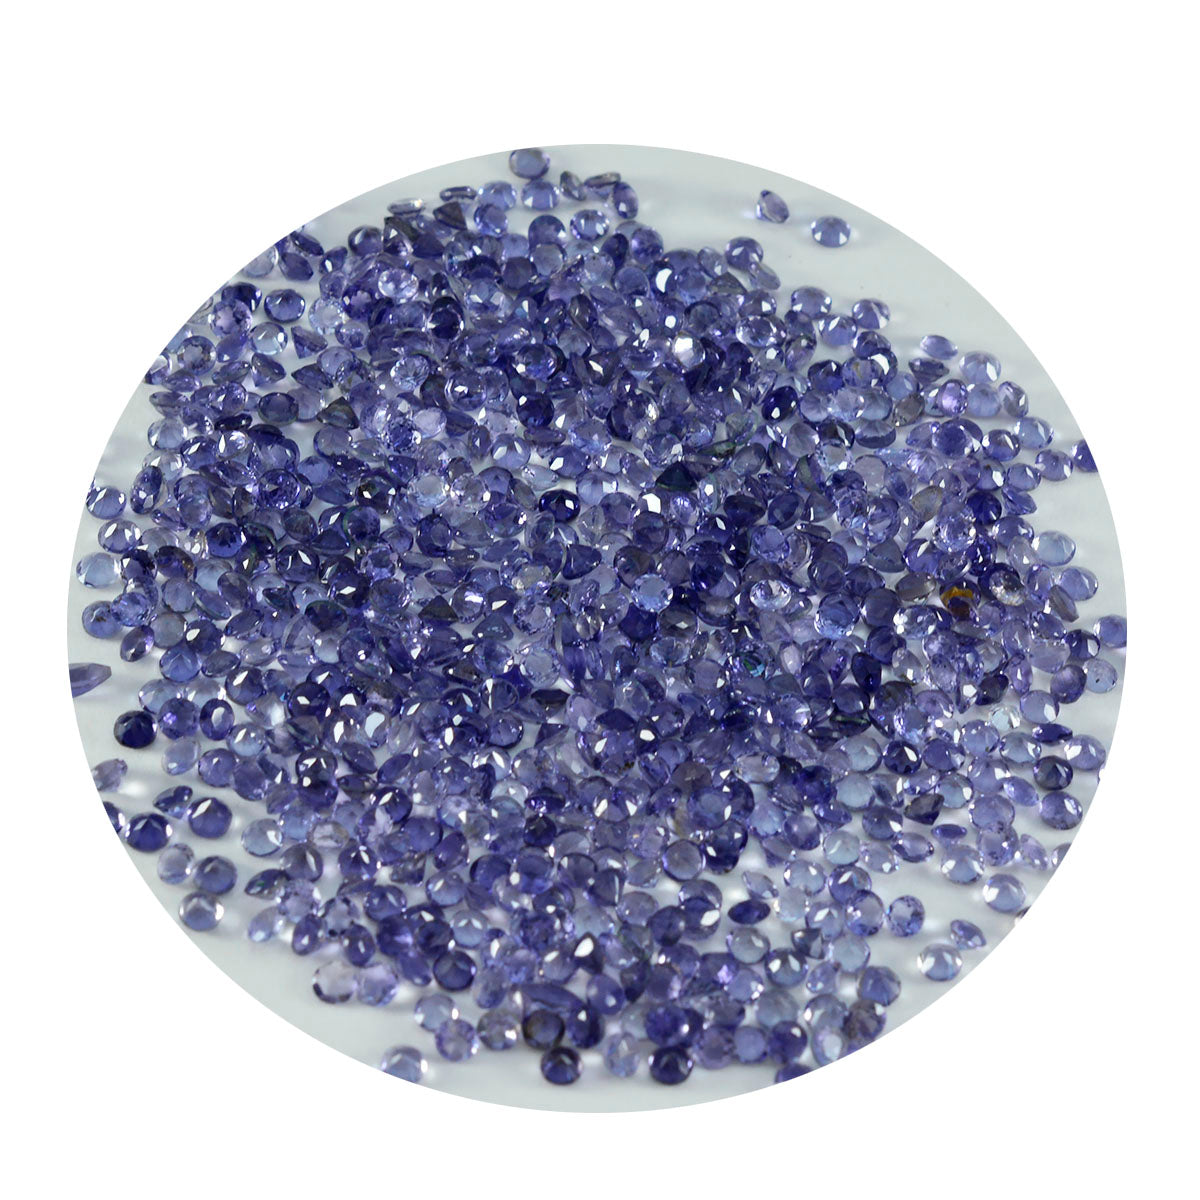 Riyogems 1 pieza de gemas de iolita azul facetadas de 2x2 mm con forma redonda, gemas de excelente calidad